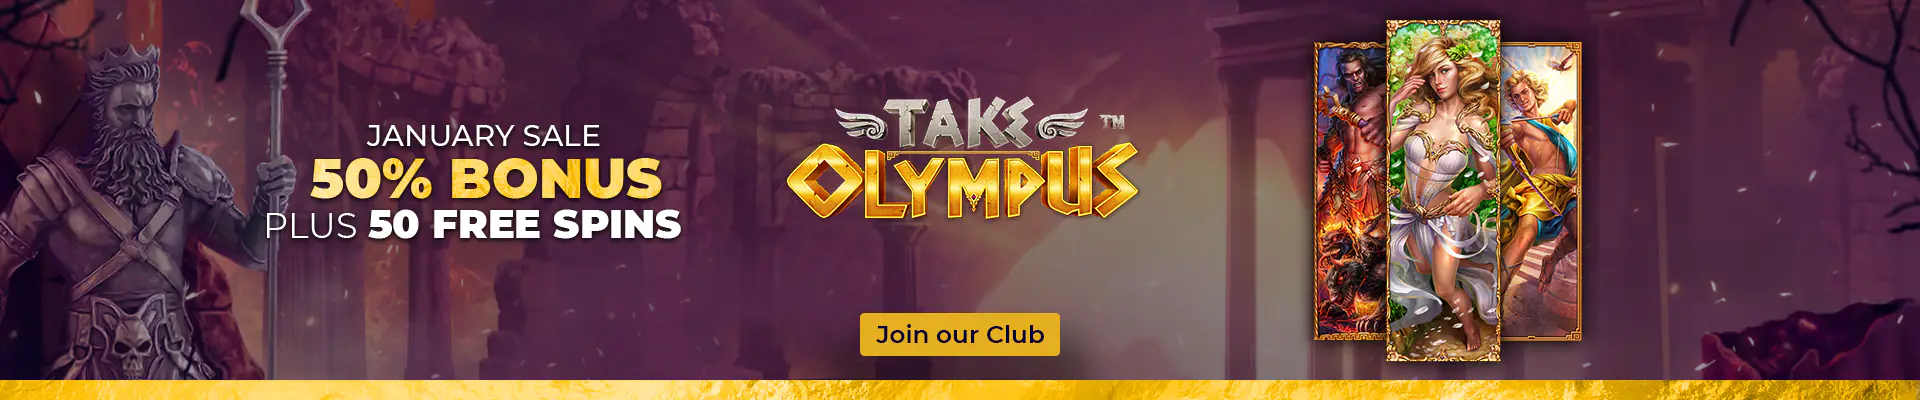 club-riches-banner-1920x400-en-take olympus-2-anon